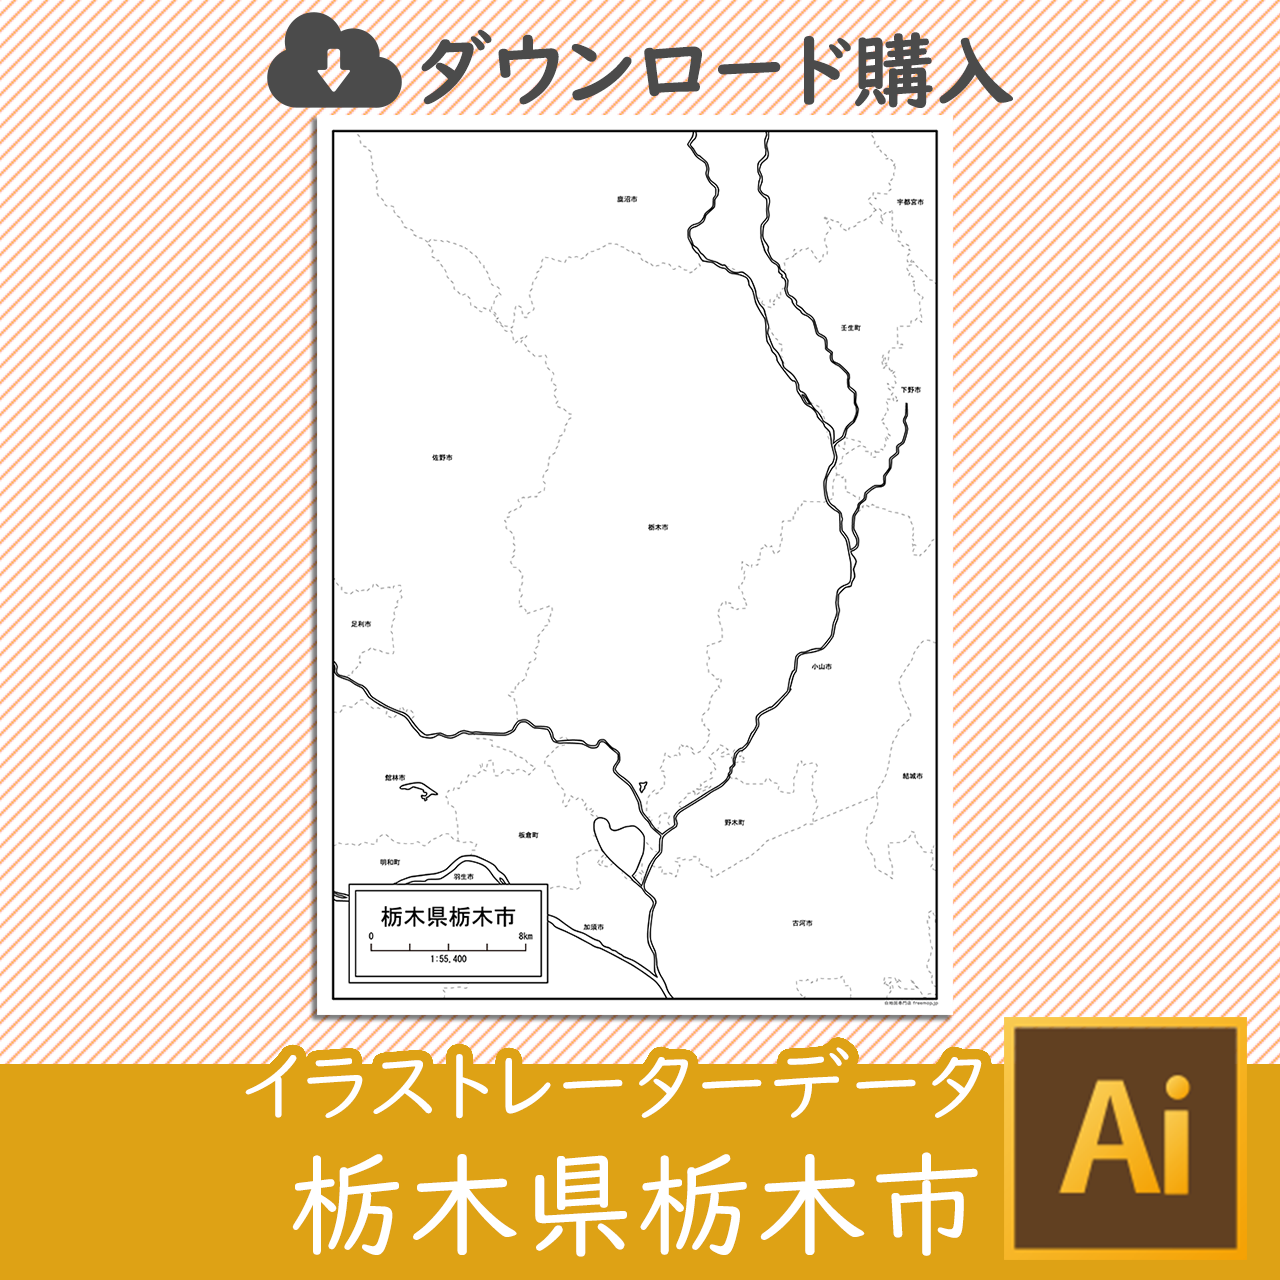 栃木市のaiデータのサムネイル画像